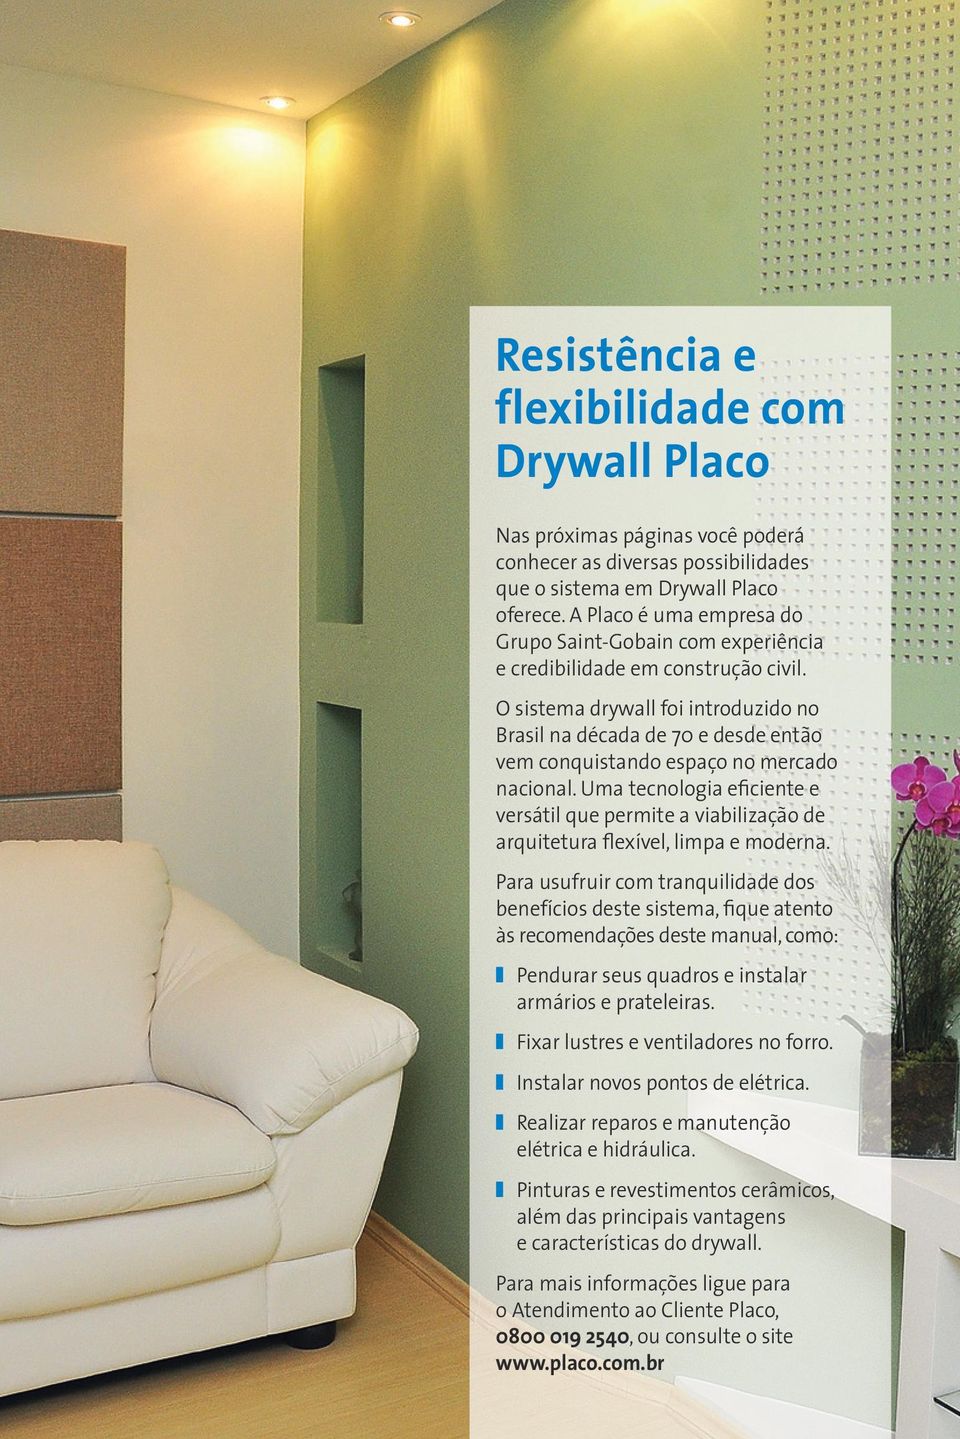 O sistema drywall foi introduzido no Brasil na década de 70 e desde então vem conquistando espaço no mercado nacional.